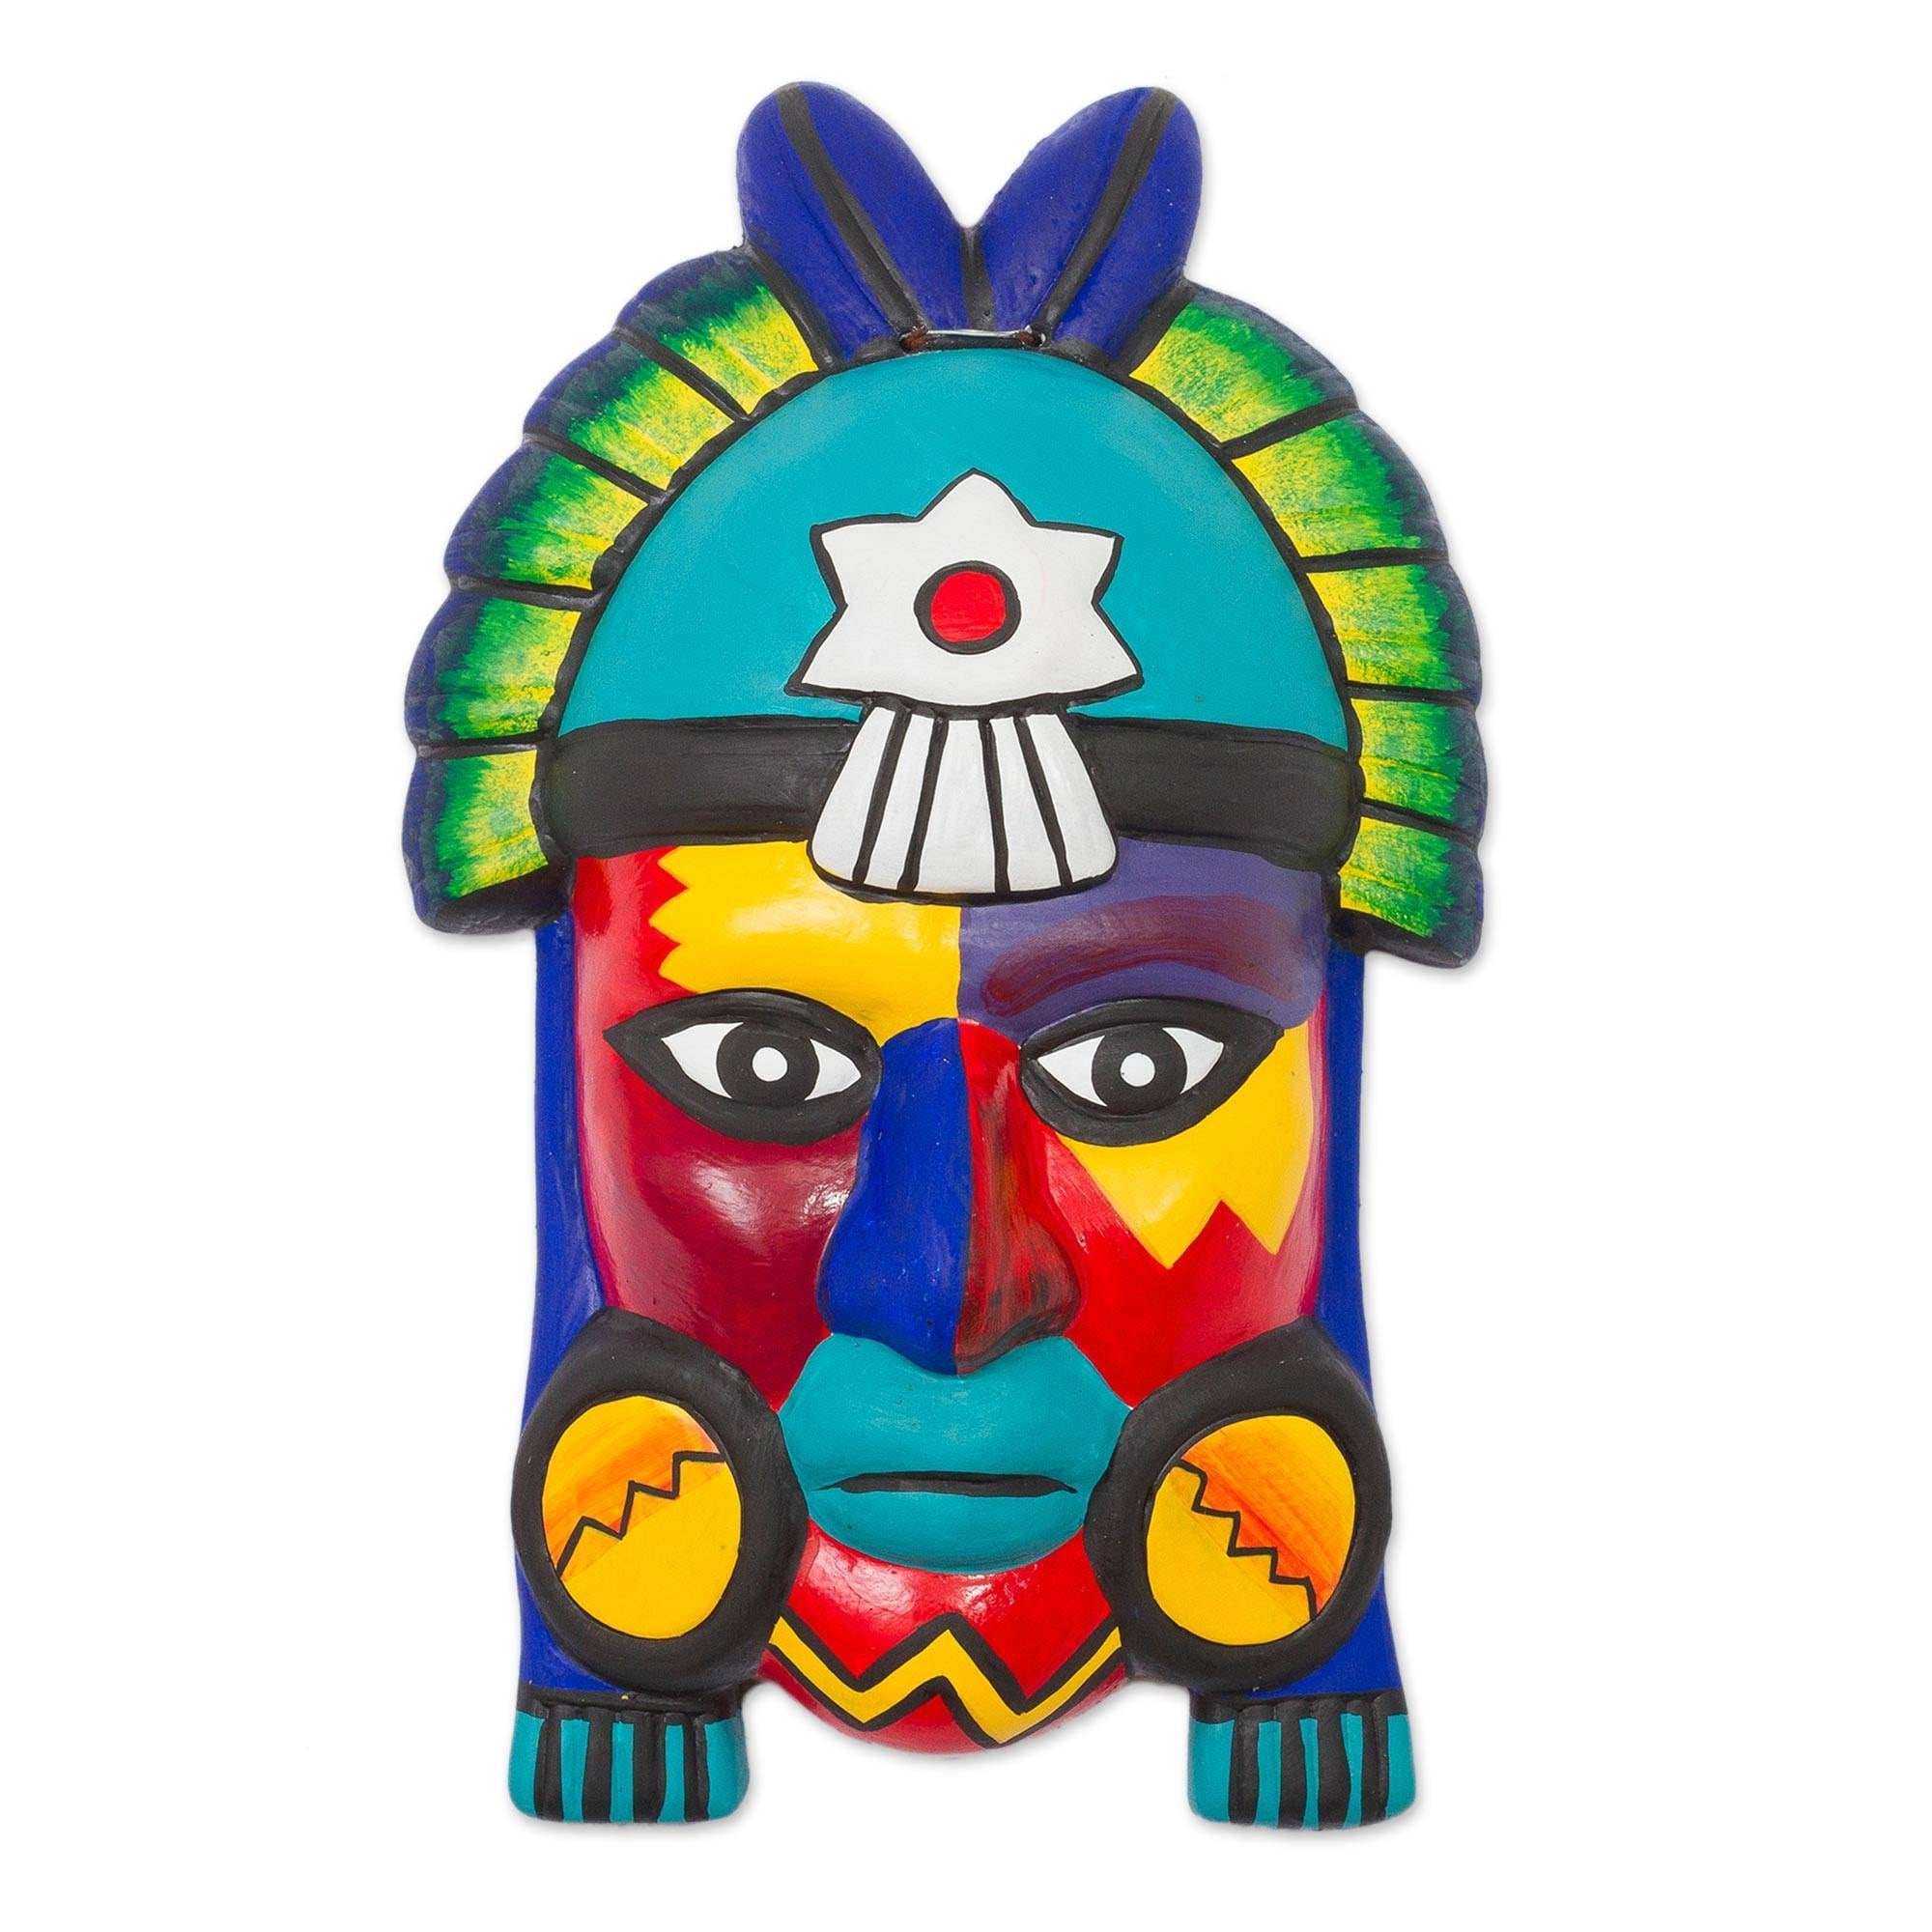 Handmade Storm Ceramic Mask (Peru) - 31673025